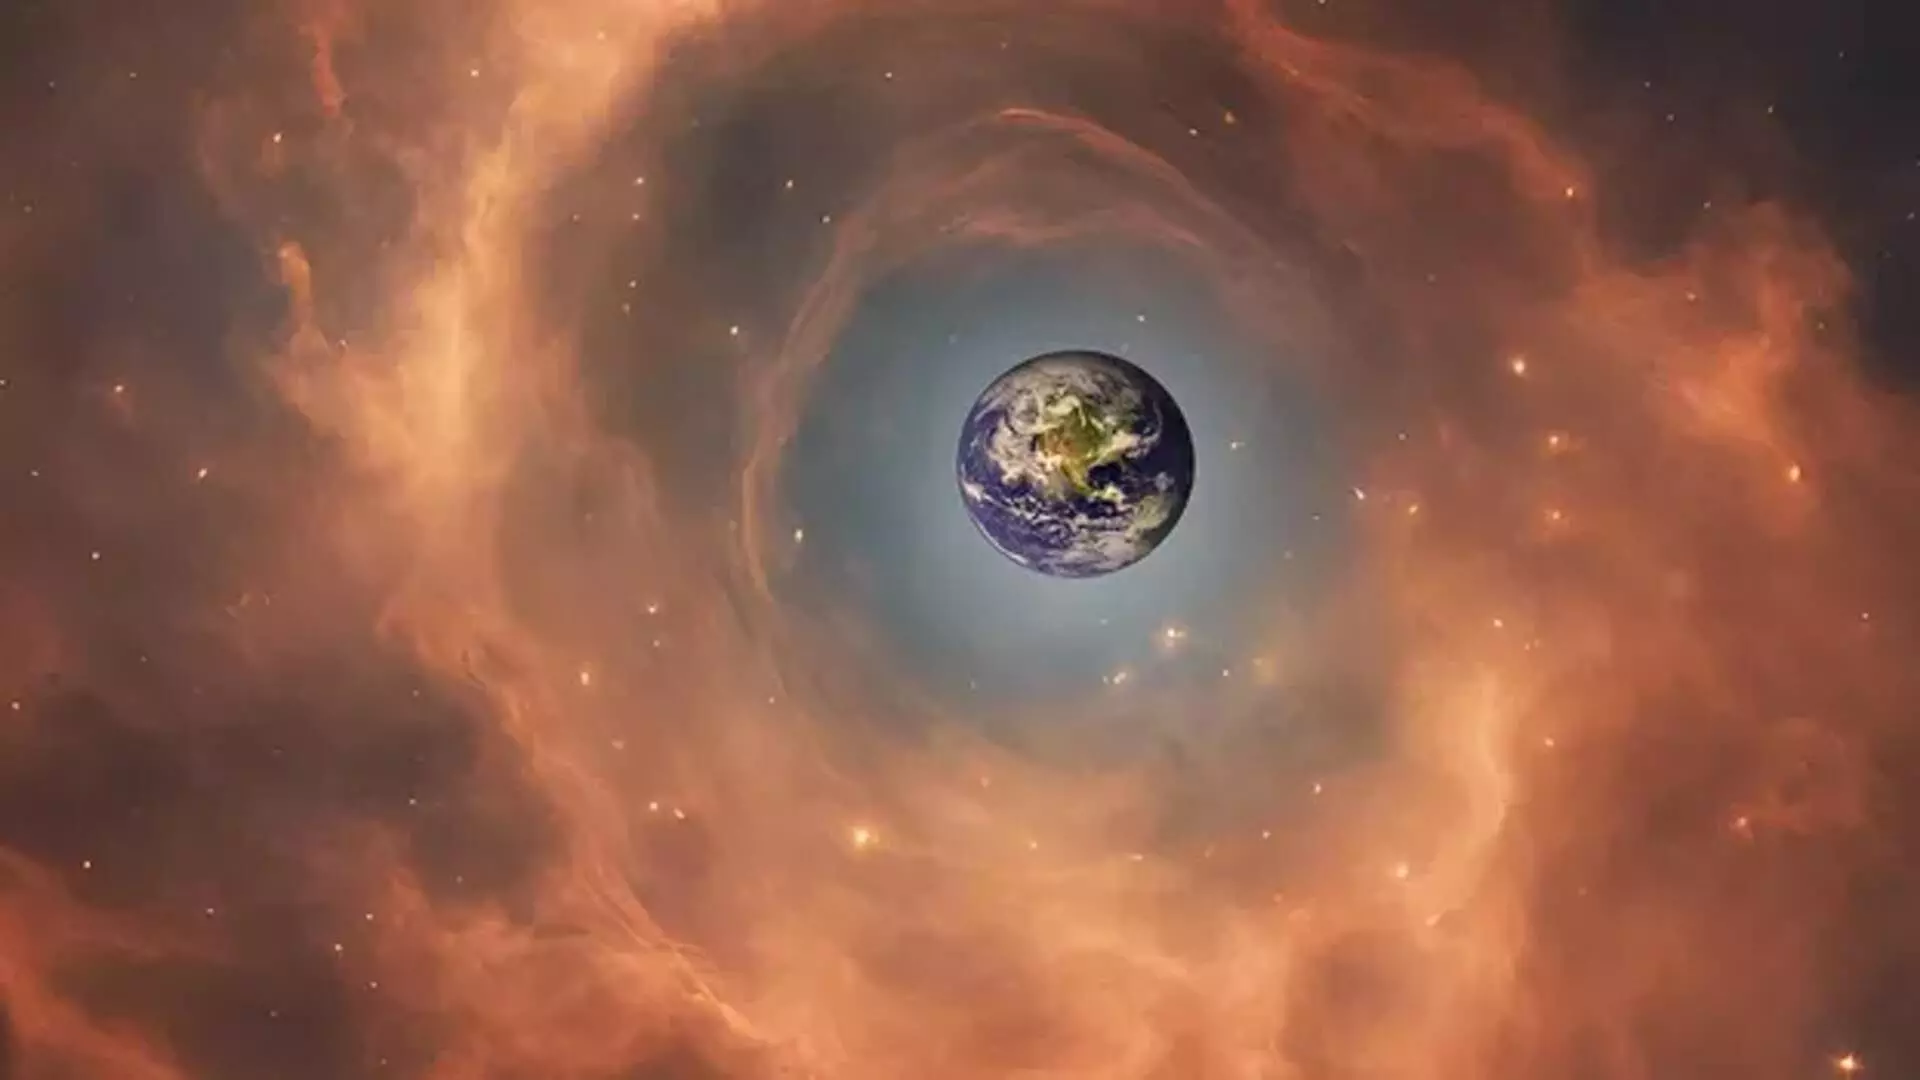 Solar system के बाहर किसी चीज़ से मुठभेड़ ने पृथ्वी पर हिमयुग को जन्म दिया